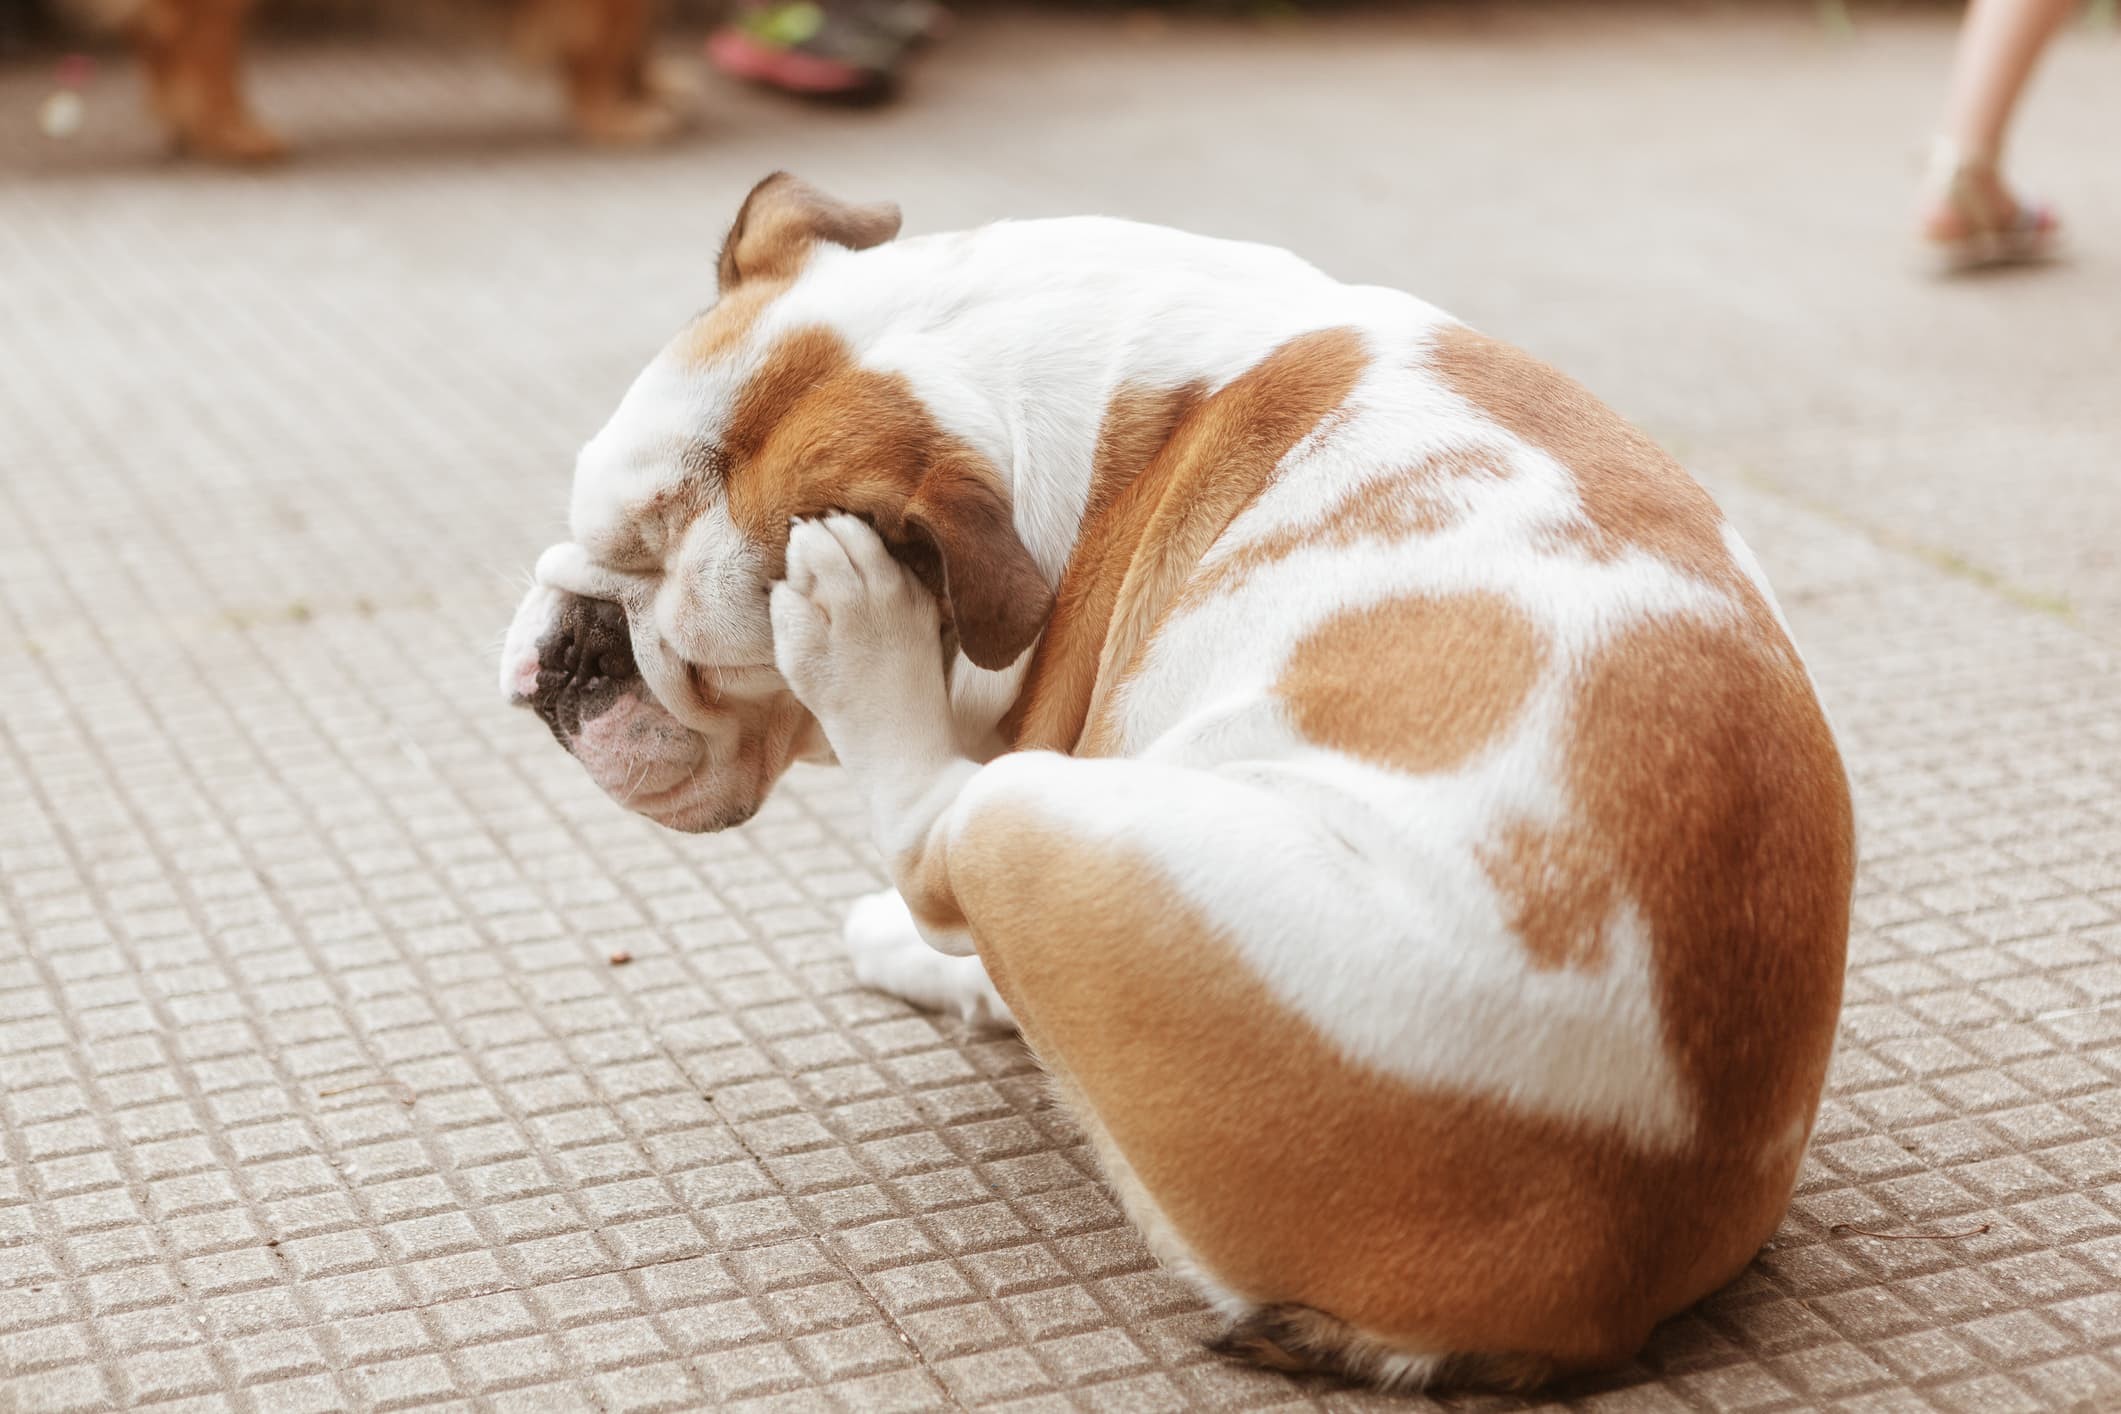 Um cachorro de pelo branco e manchas caramelo sentado no chão com a pata de trás coçando a cabeça em fundo desfocado.